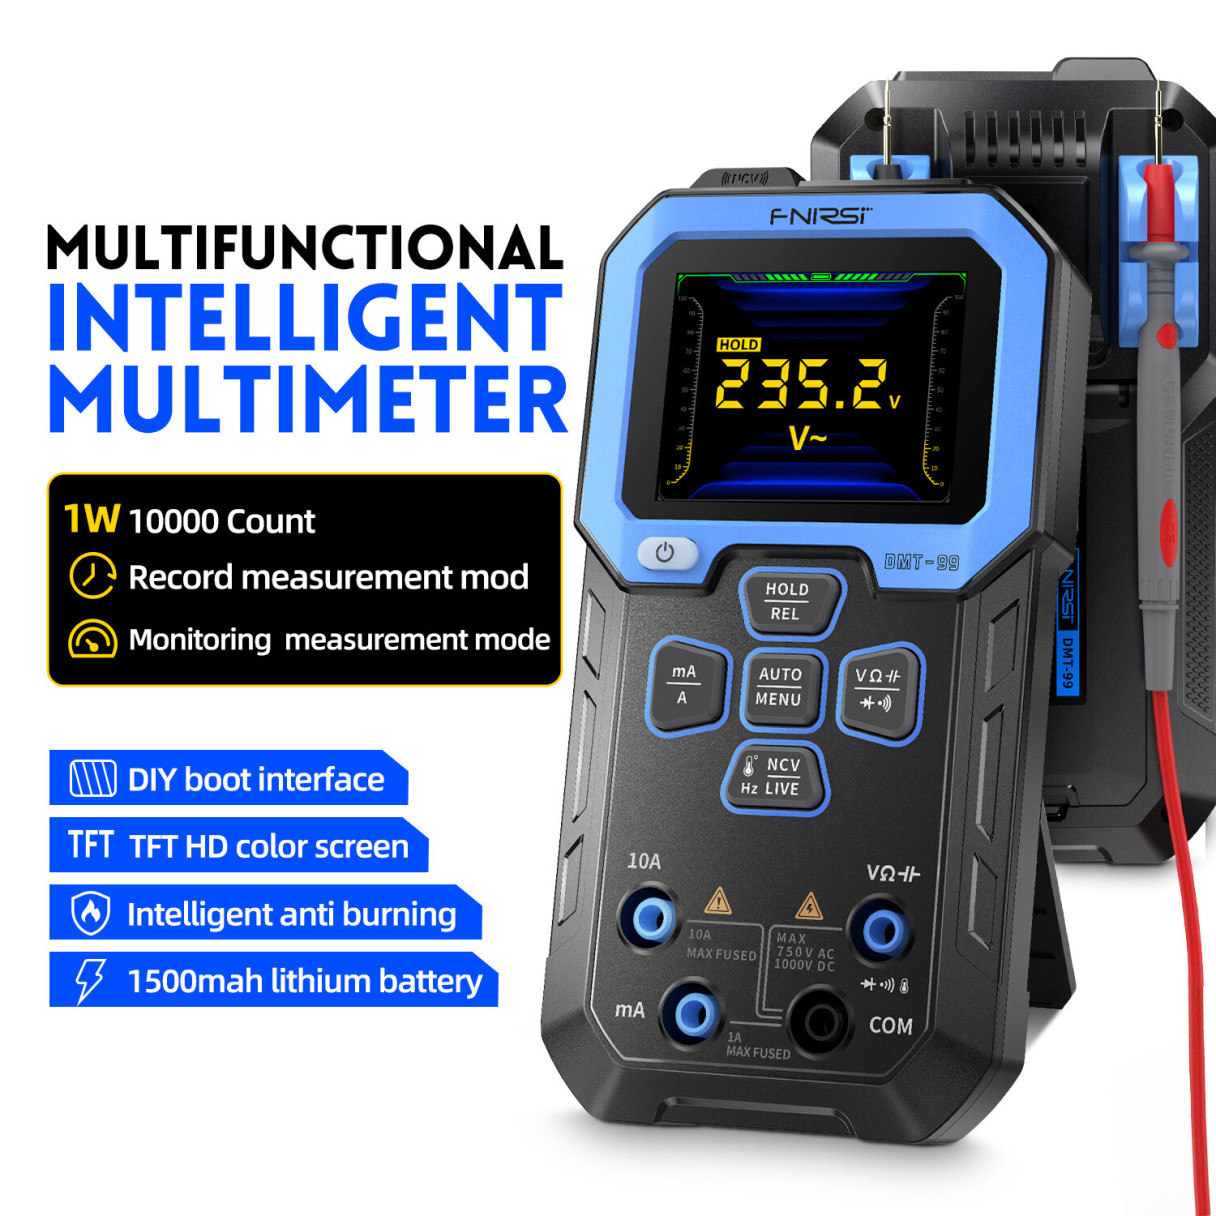 FNIRSI DMT-99 Digital Multimeter 9999 Counts Smart Professional Tester 1000V 10A True RMS Auto Range AC DC Ohm Hz Capacitance